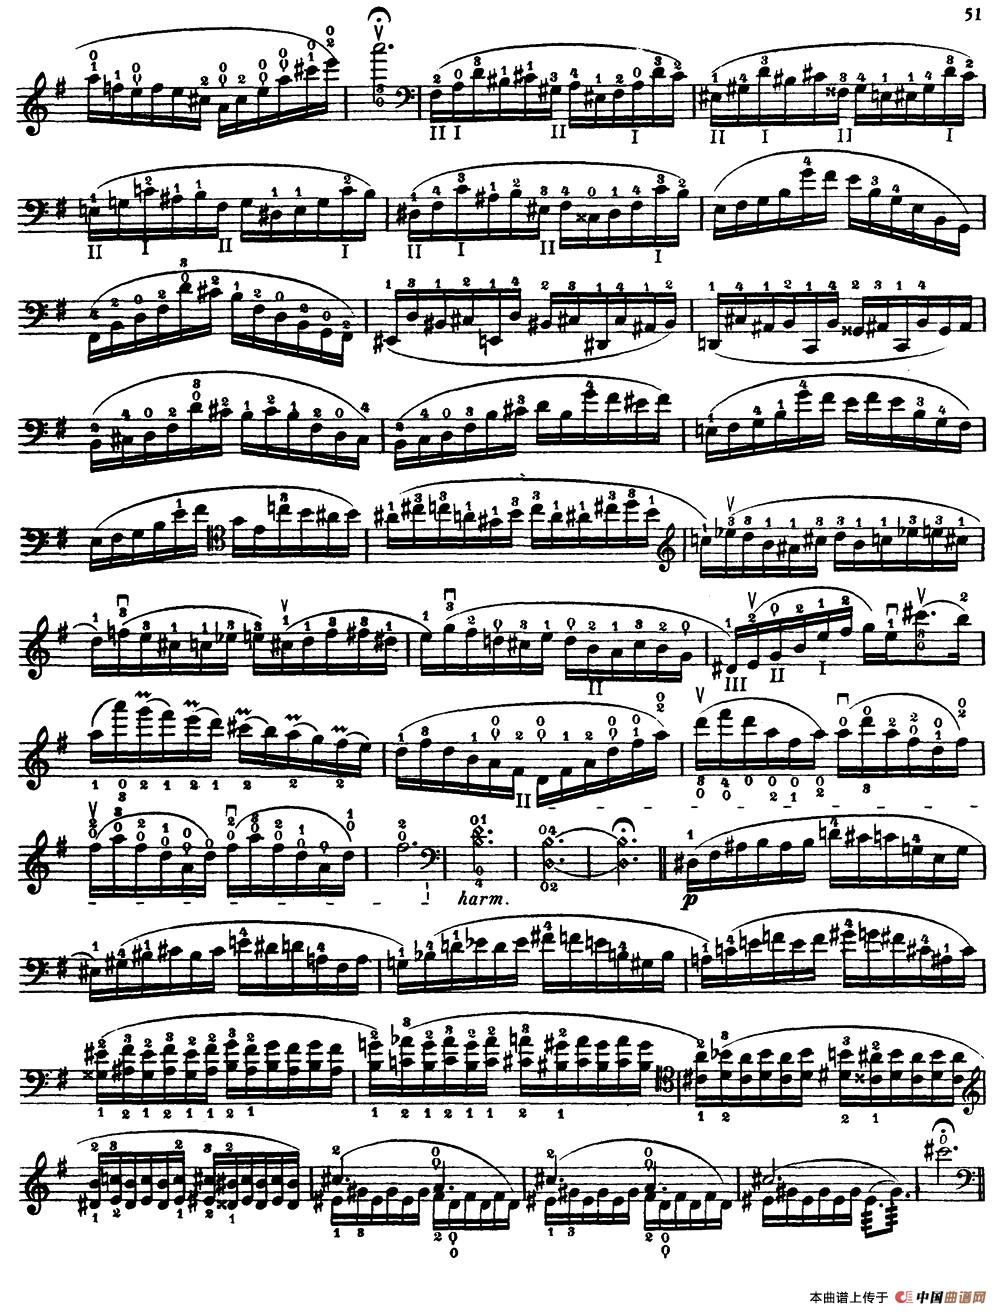 大提琴高级练习曲40首 No.24小提琴谱